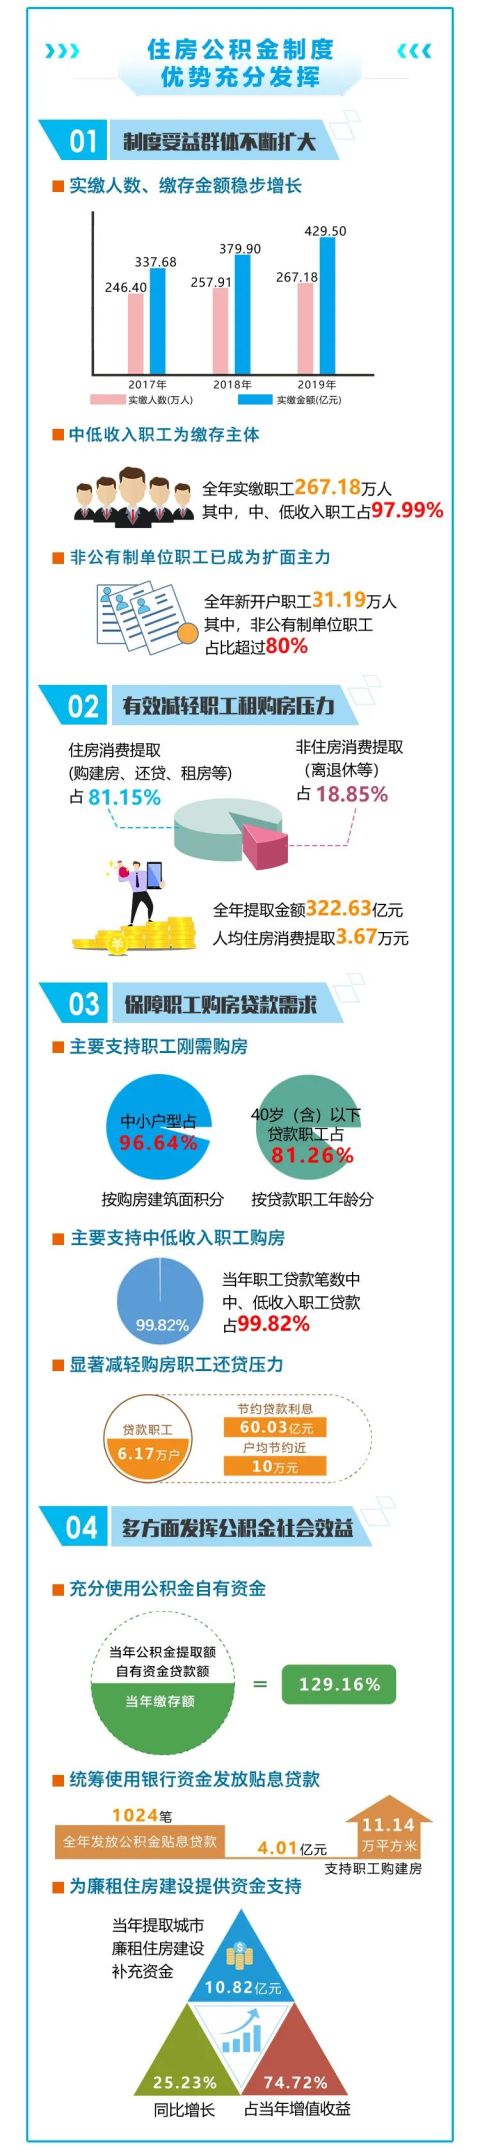 重庆住房公积金“晒账本”：2019年发放公积金个贷6.17万笔236.12亿元